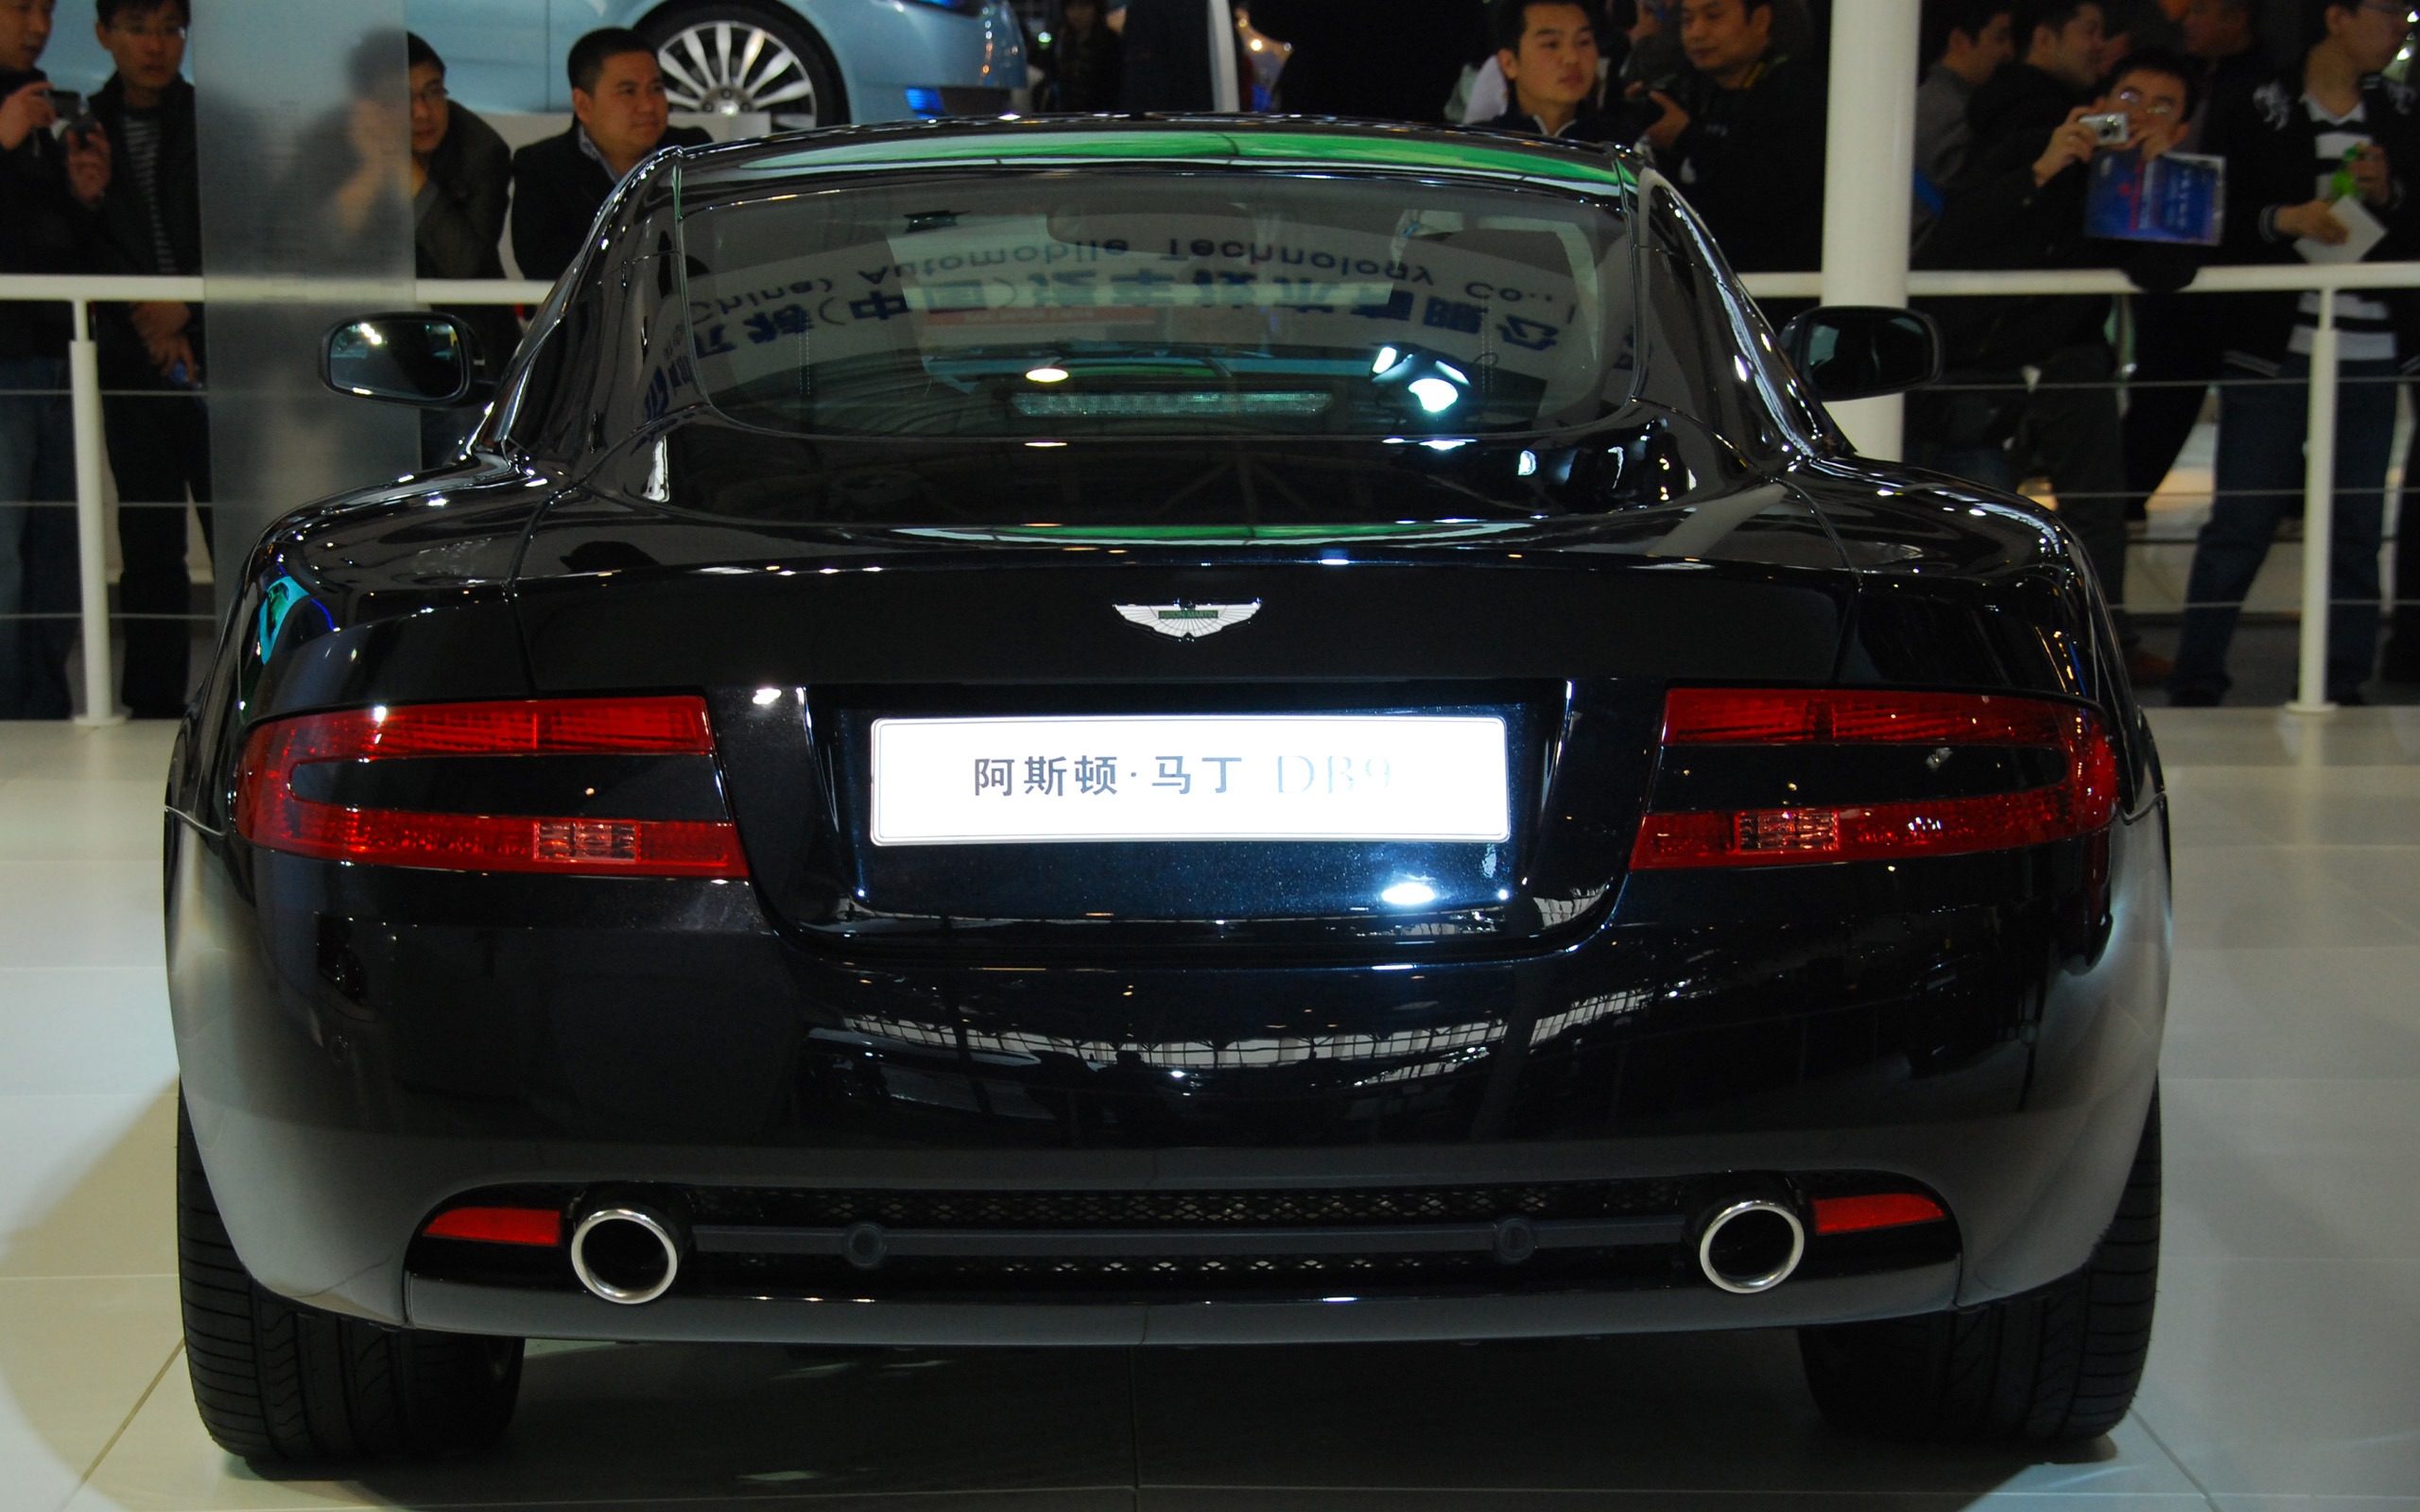 2010北京国际车展(一) (z321x123作品)30 - 2560x1600